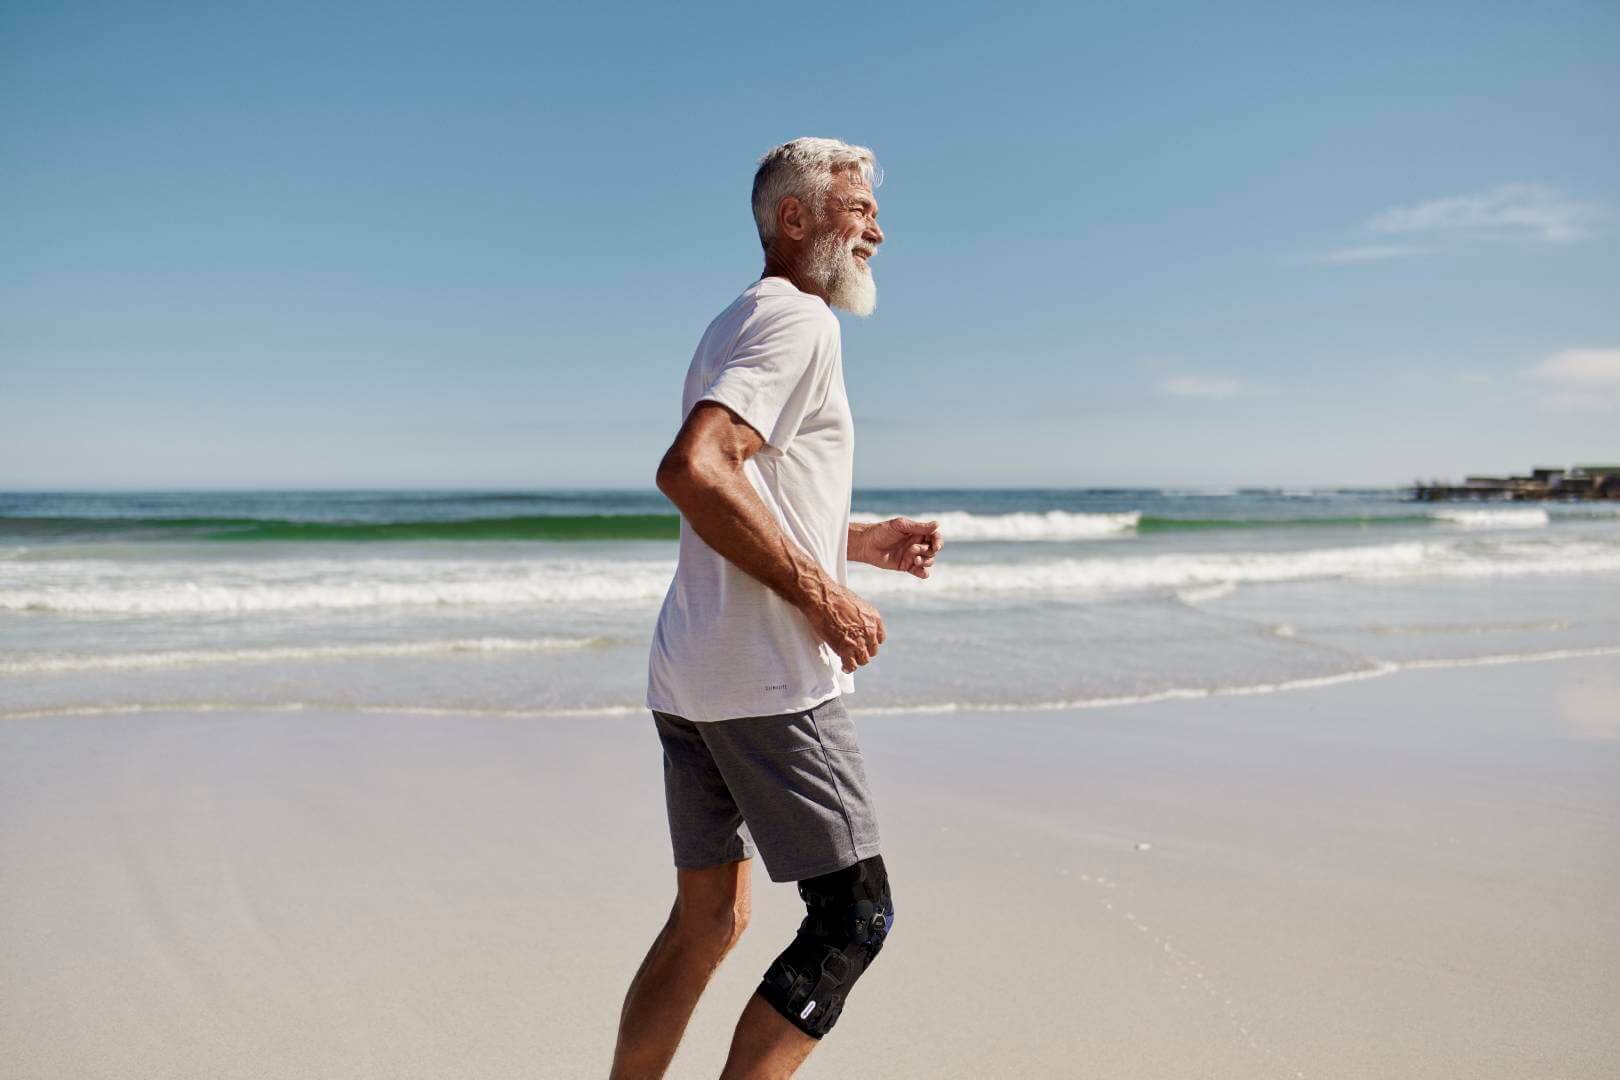 Ein älterer Herr joggt am Strand entlang. Im Hintergrund ist das Meer zu sehen. Er trägt eine GenuTrain OA von Bauerfeind am rechten Knie. Die Orthese wurde speziell für Arthrose-Patienten entwickelt.